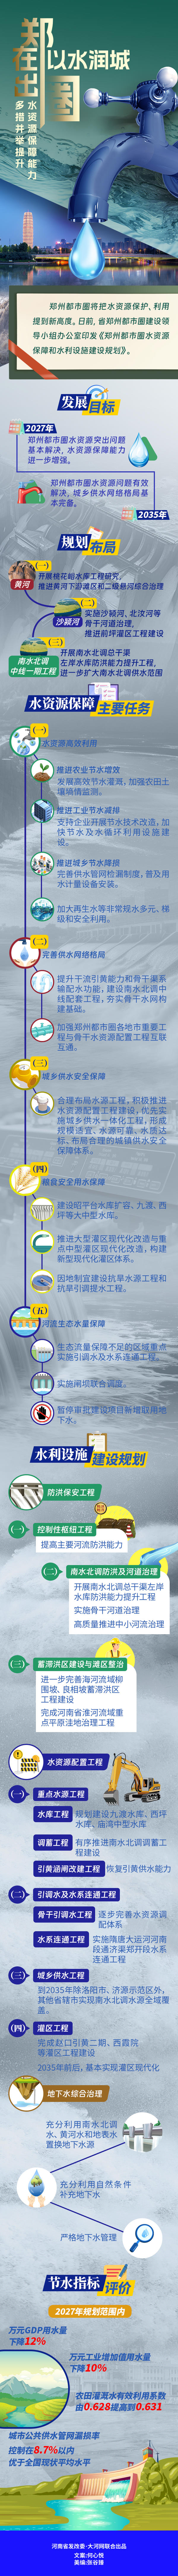 郑在出圈⑥丨以水润城 多维度提升郑州都市圈水资源保障能力